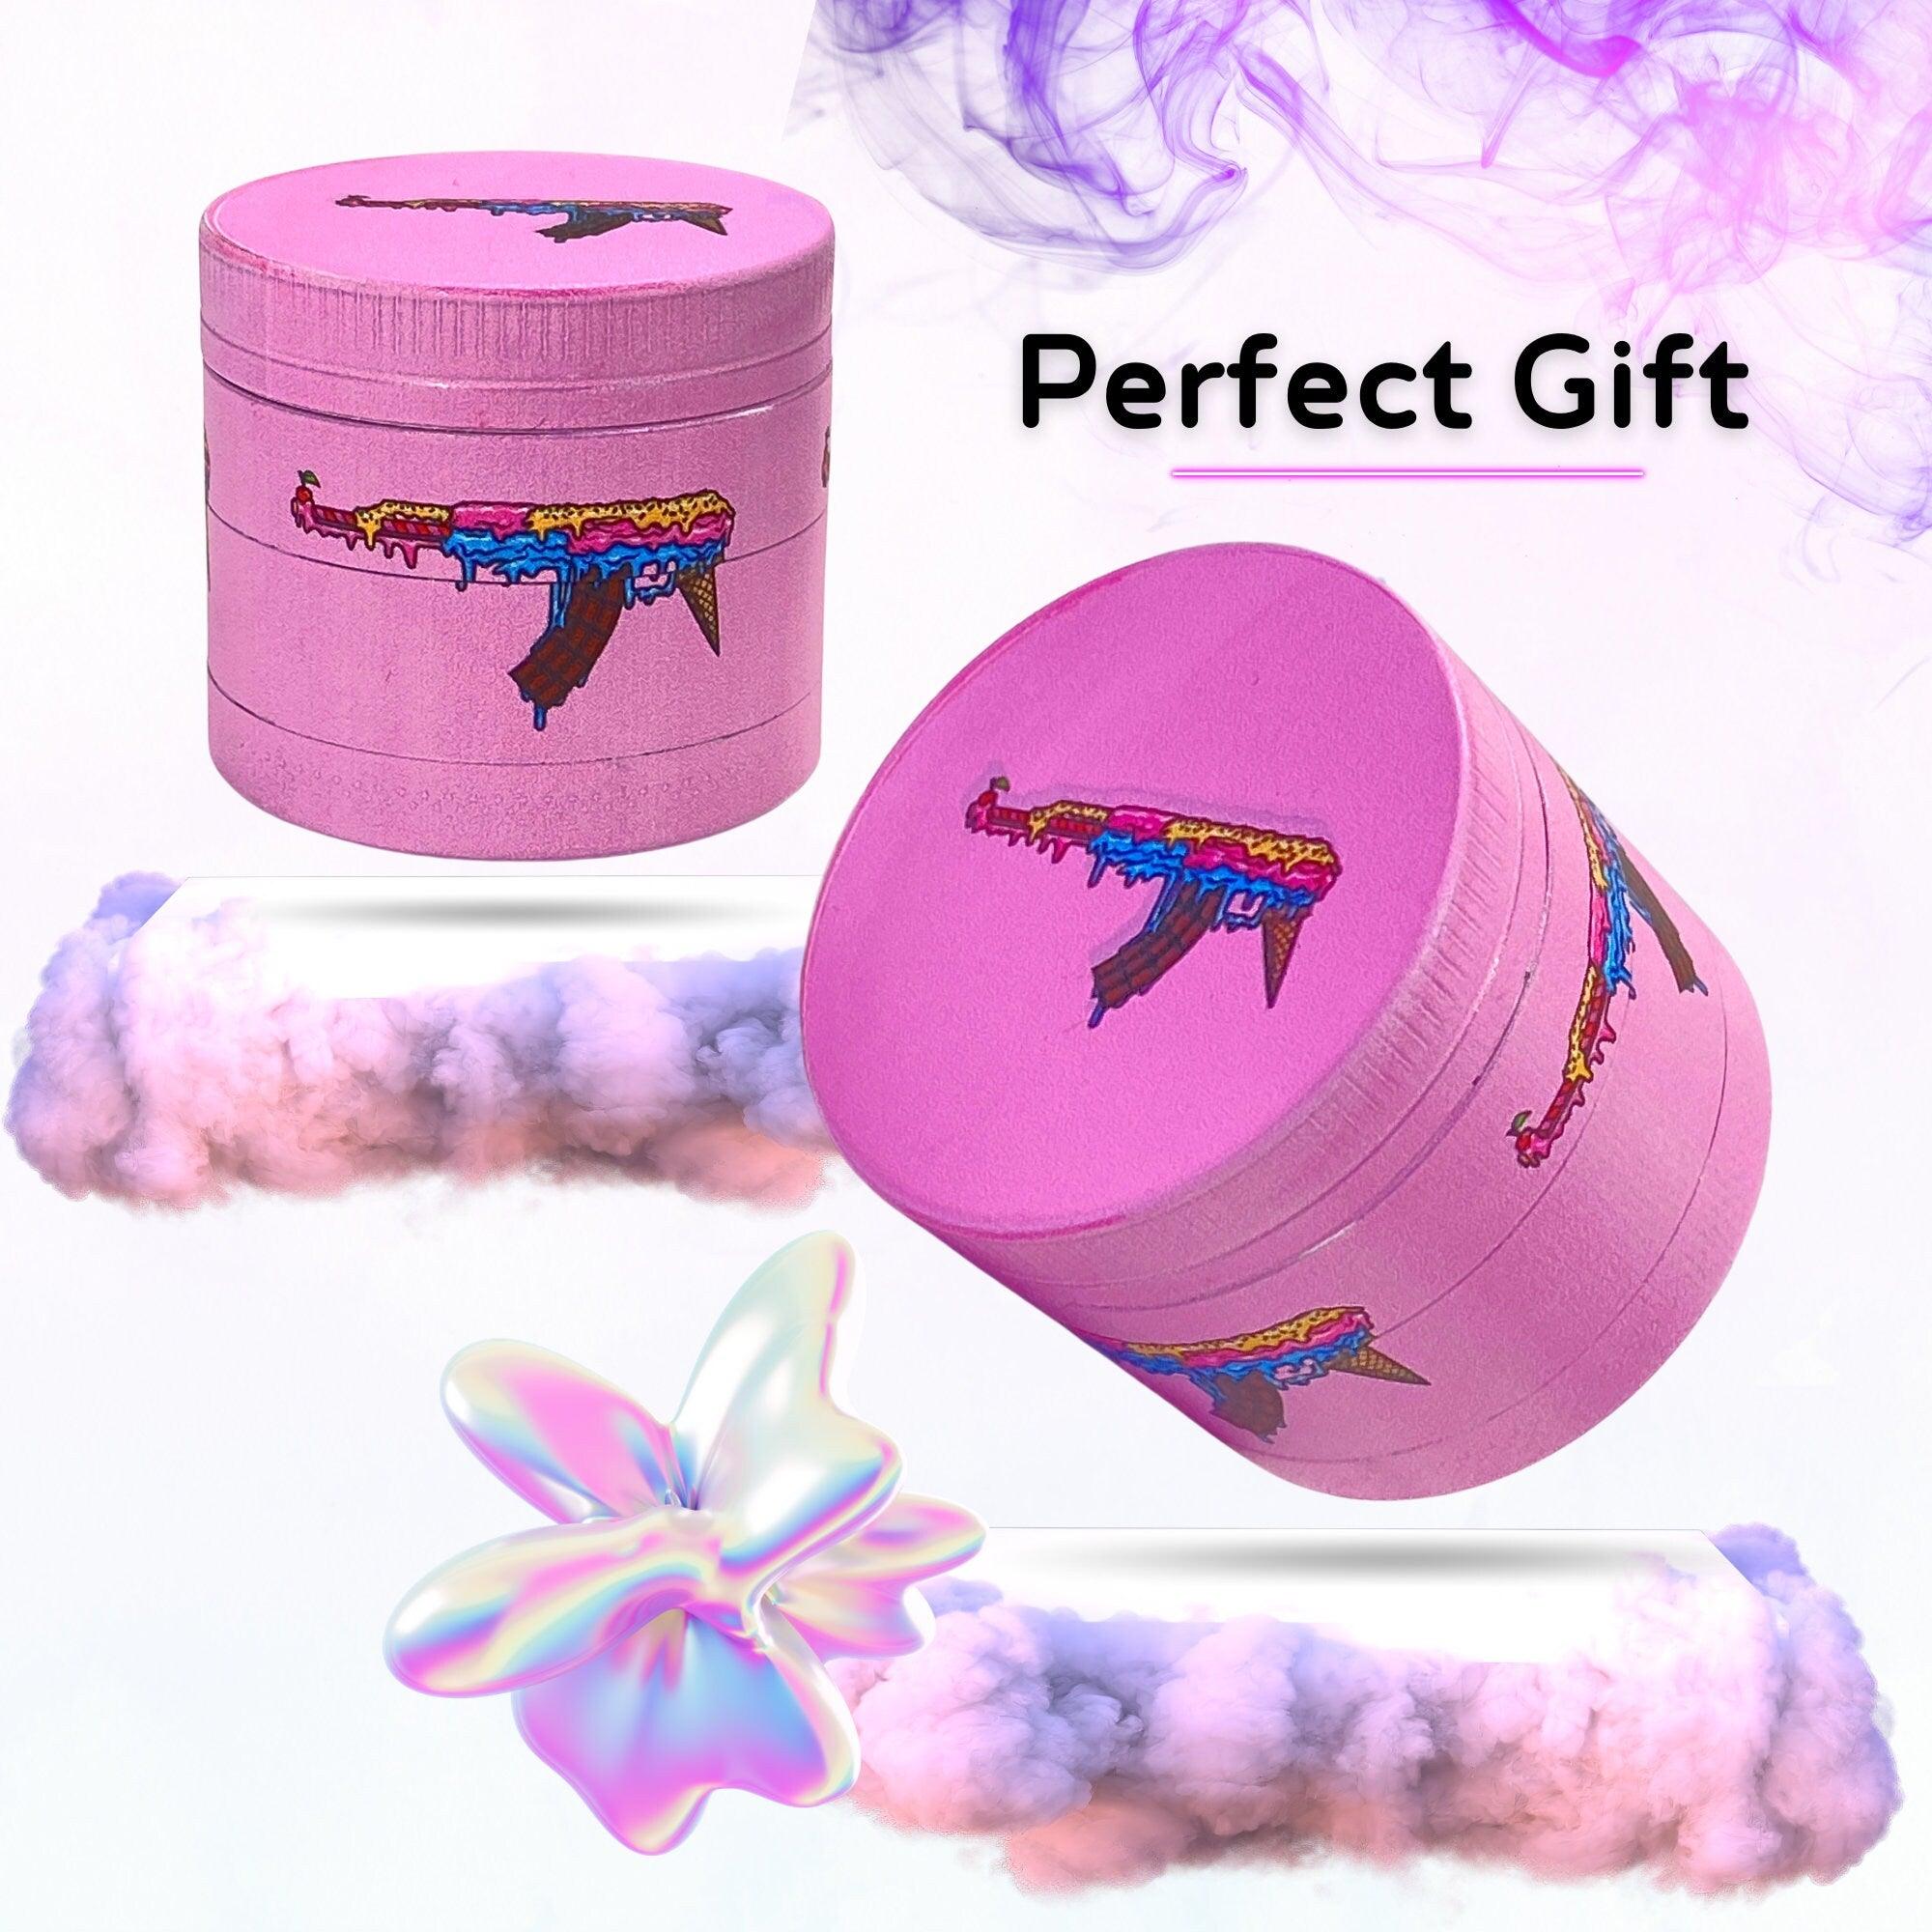 Candy Gun Weed Grinder | Cannabis grinder, weed accessories, 4 piece grinder, metal grinder, Cute Pink grinder, Herb Girly, grinder AK-47